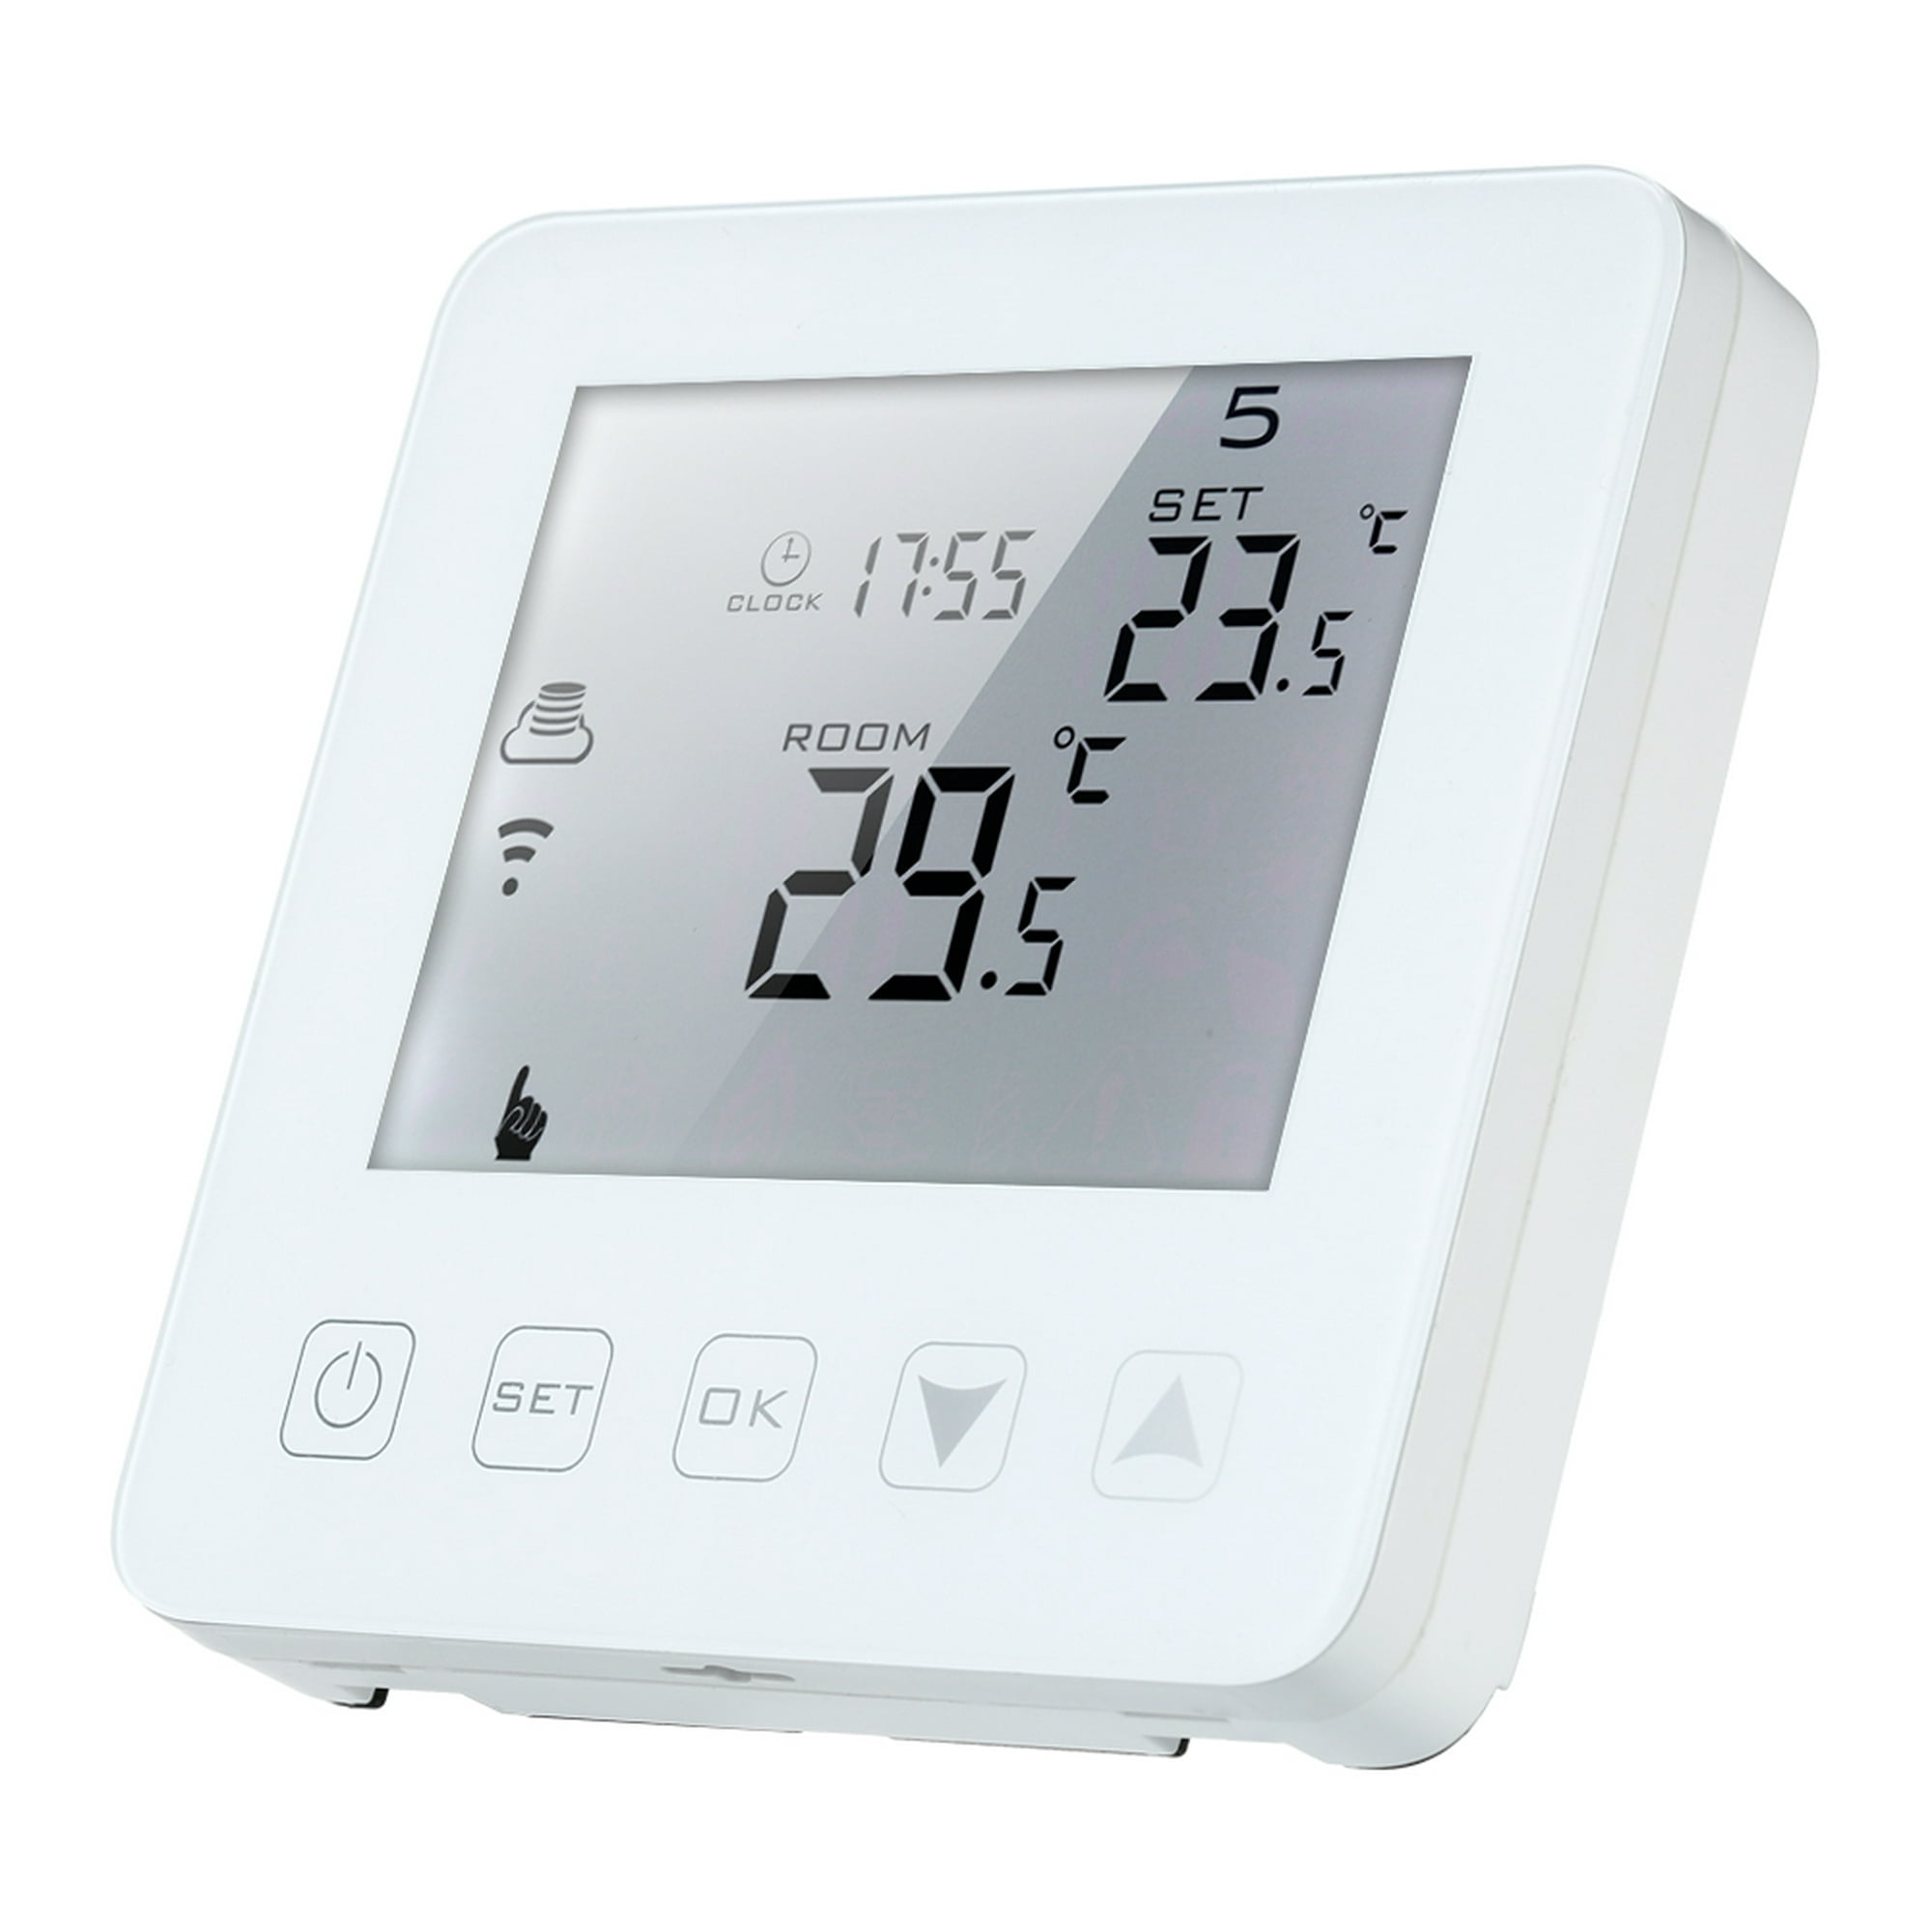 Comprar Termostato de calefacción de caldera de Gas LCD, controlador de  temperatura ambiente programable semanal 3A, termostato Digital de caldera  de Gas